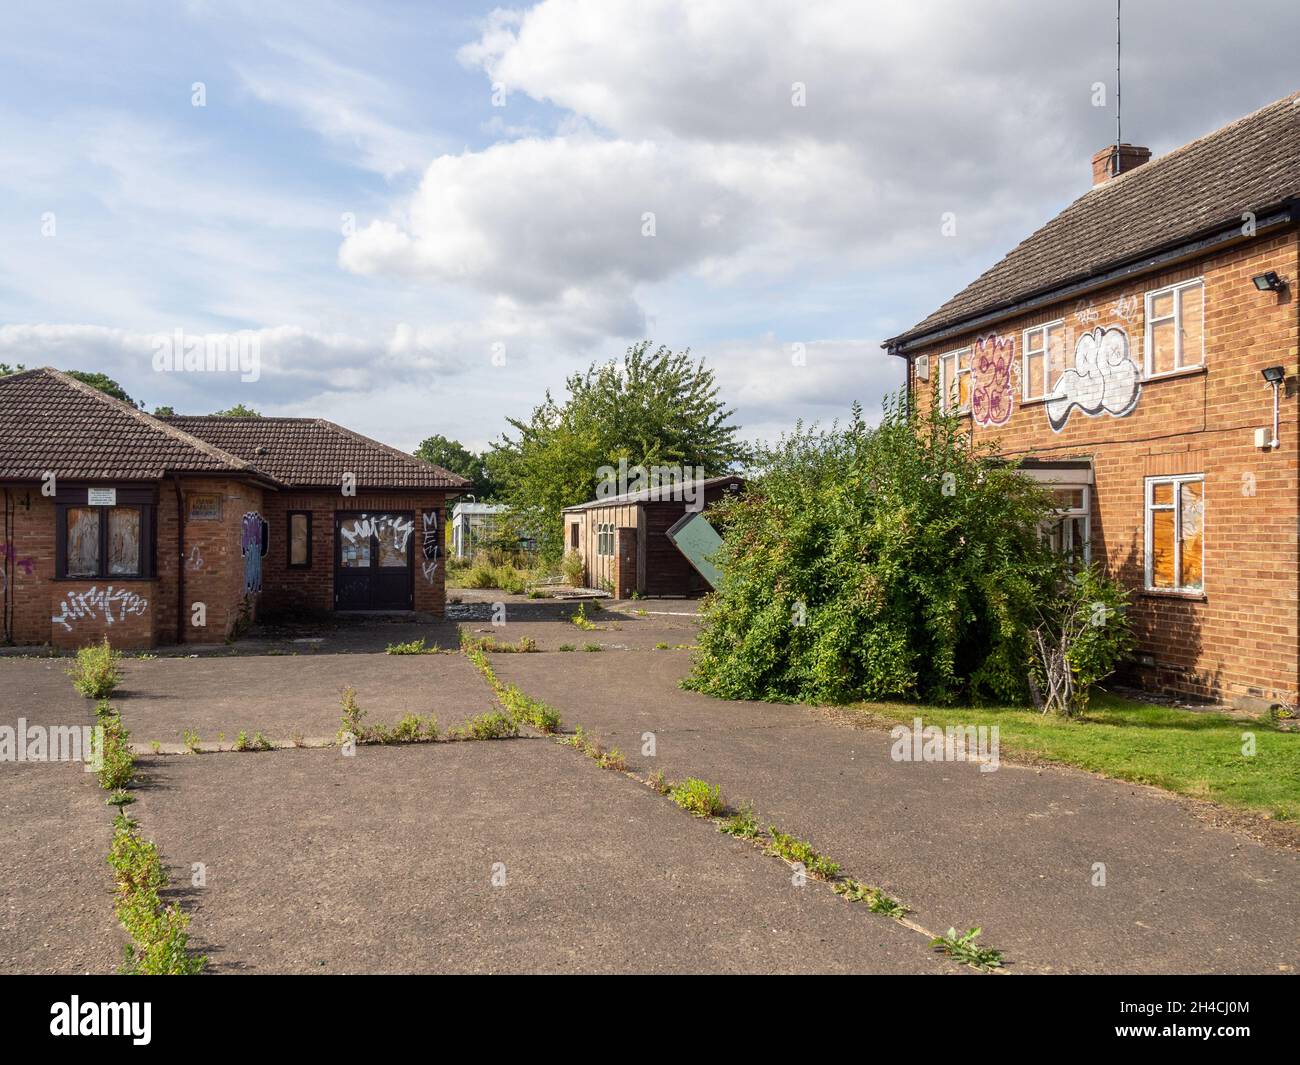 Le site du Young's Garden Centre est maintenant abandonné et négligé, Blisworth, Northamptonshire, Royaume-Uni; il a fermé en 2015 après la mort du propriétaire. Banque D'Images